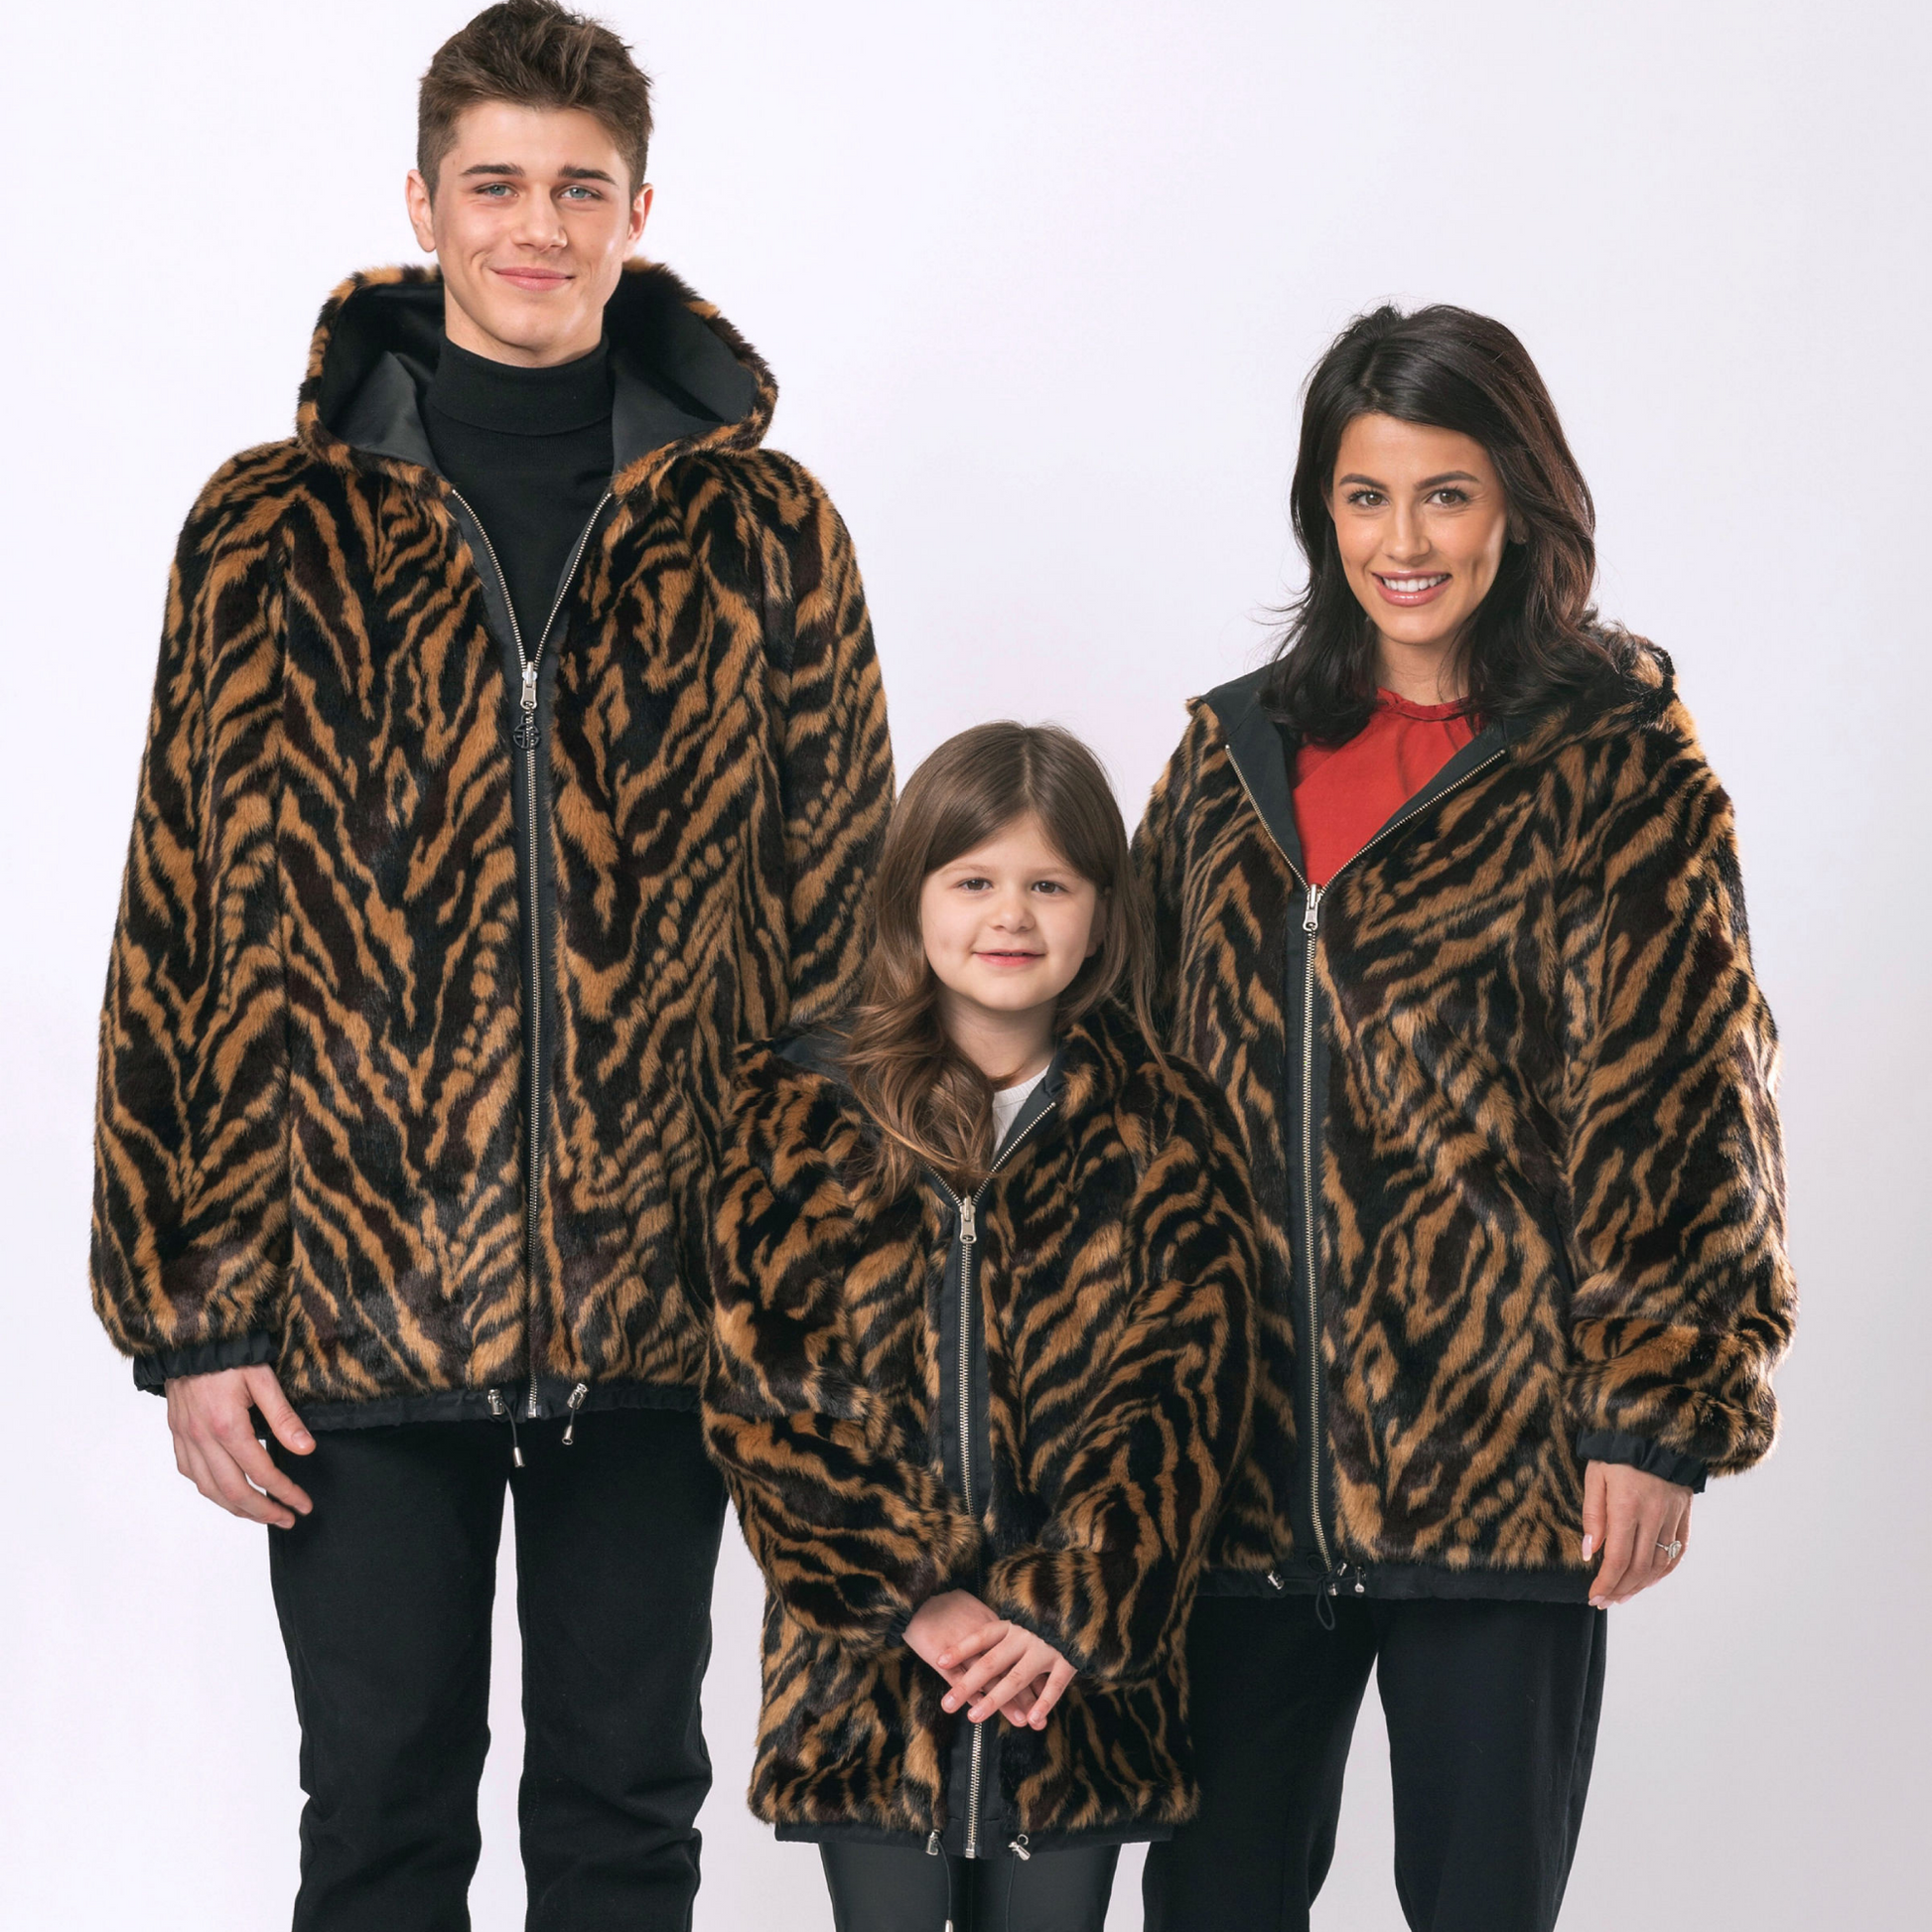 Men's Leopard Tiger Print Suit Jacket